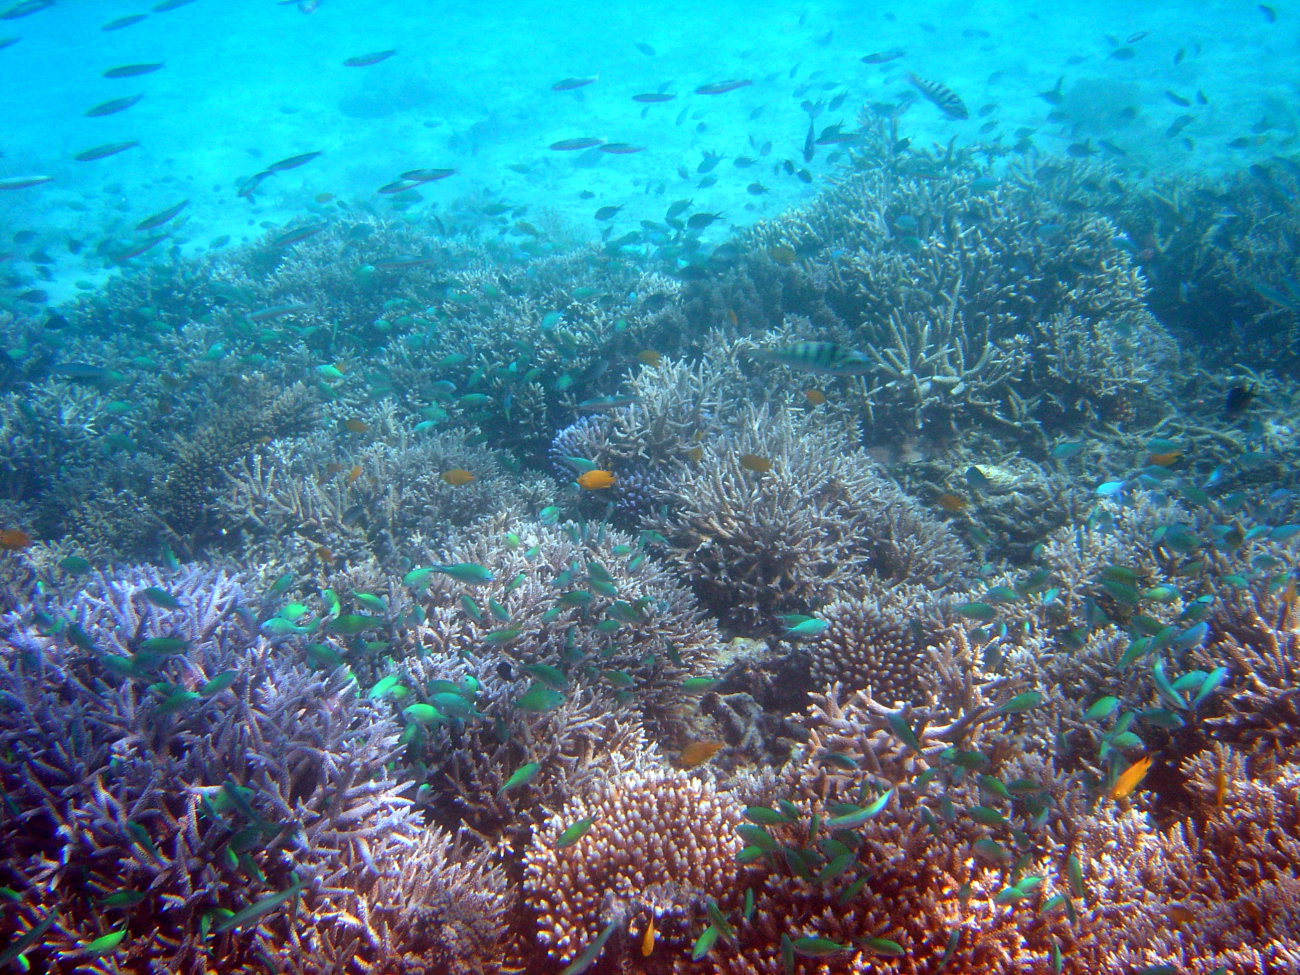 Reef scene with green damselfish